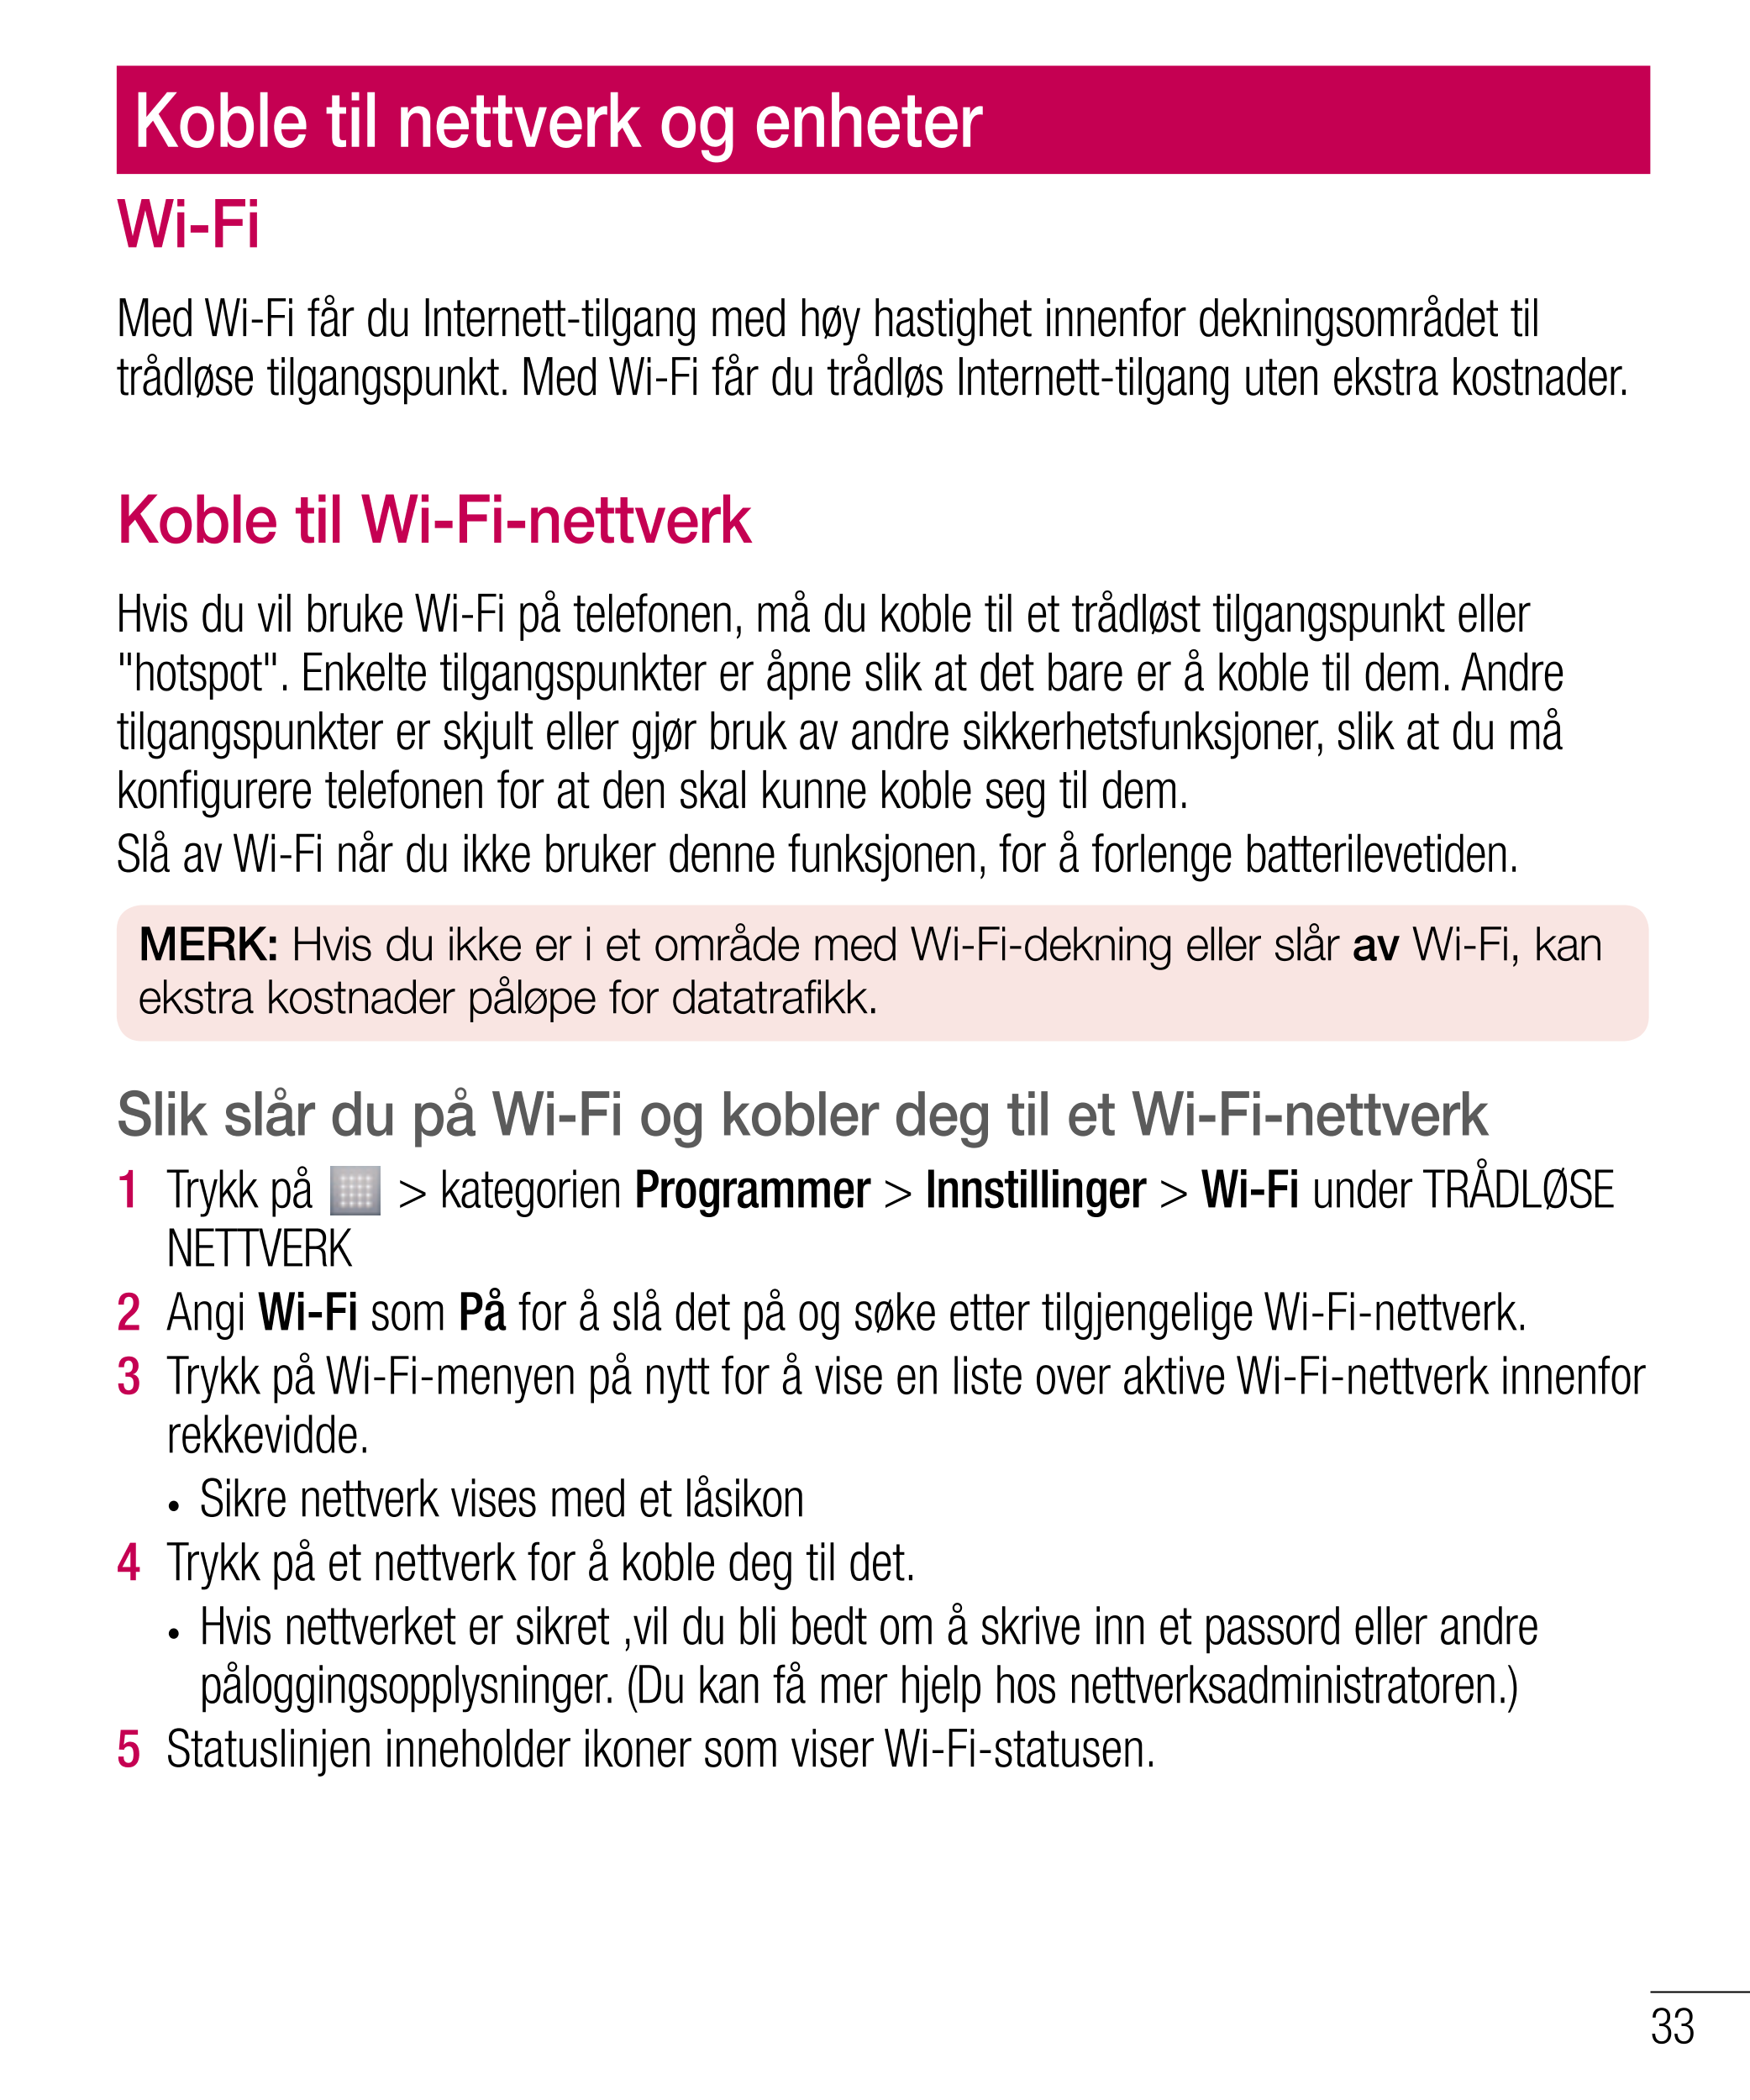 Koble til nettverk og enheter
Wi-Fi
Med Wi-Fi får du Internett-tilgang med høy hastighet innenfor dekningsområdet til 
trådløse 